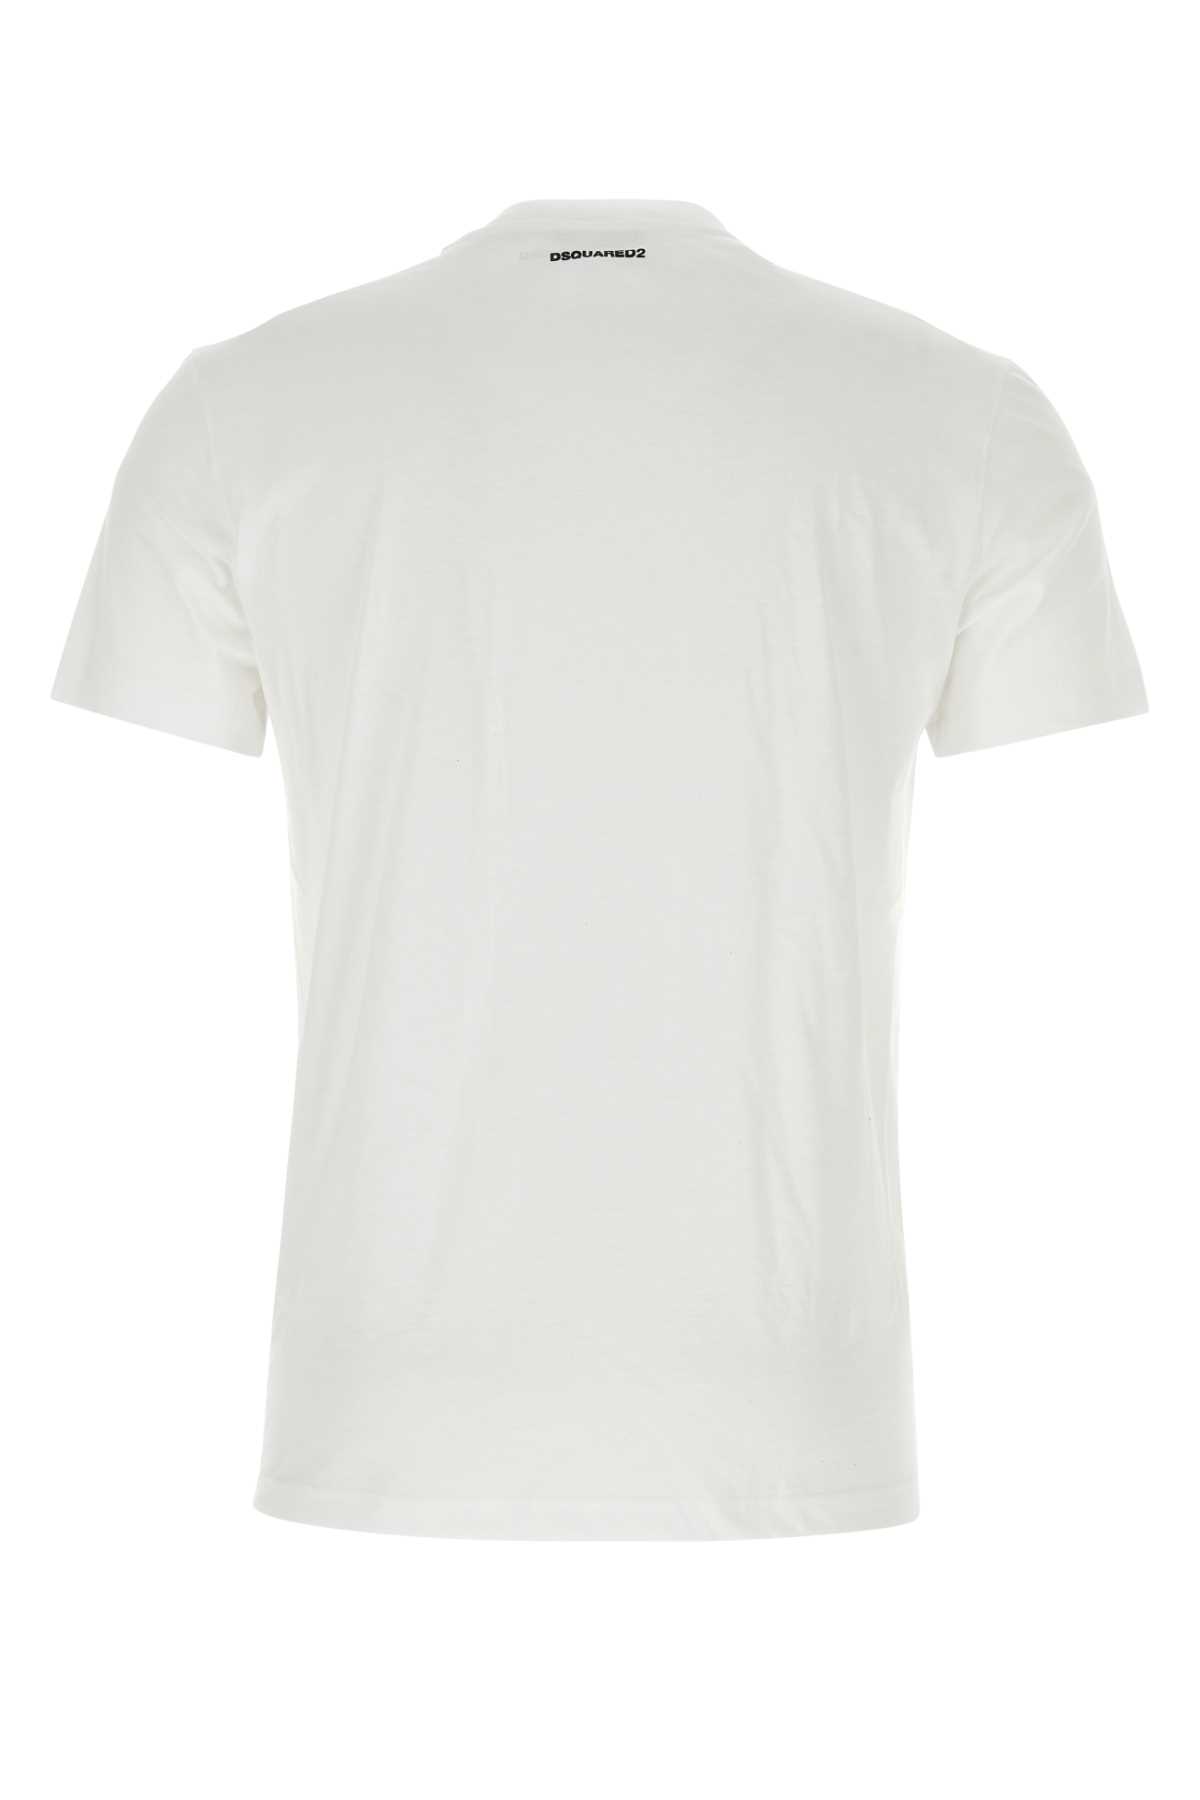 Shop Dsquared2 White Cotton T-shirt Set